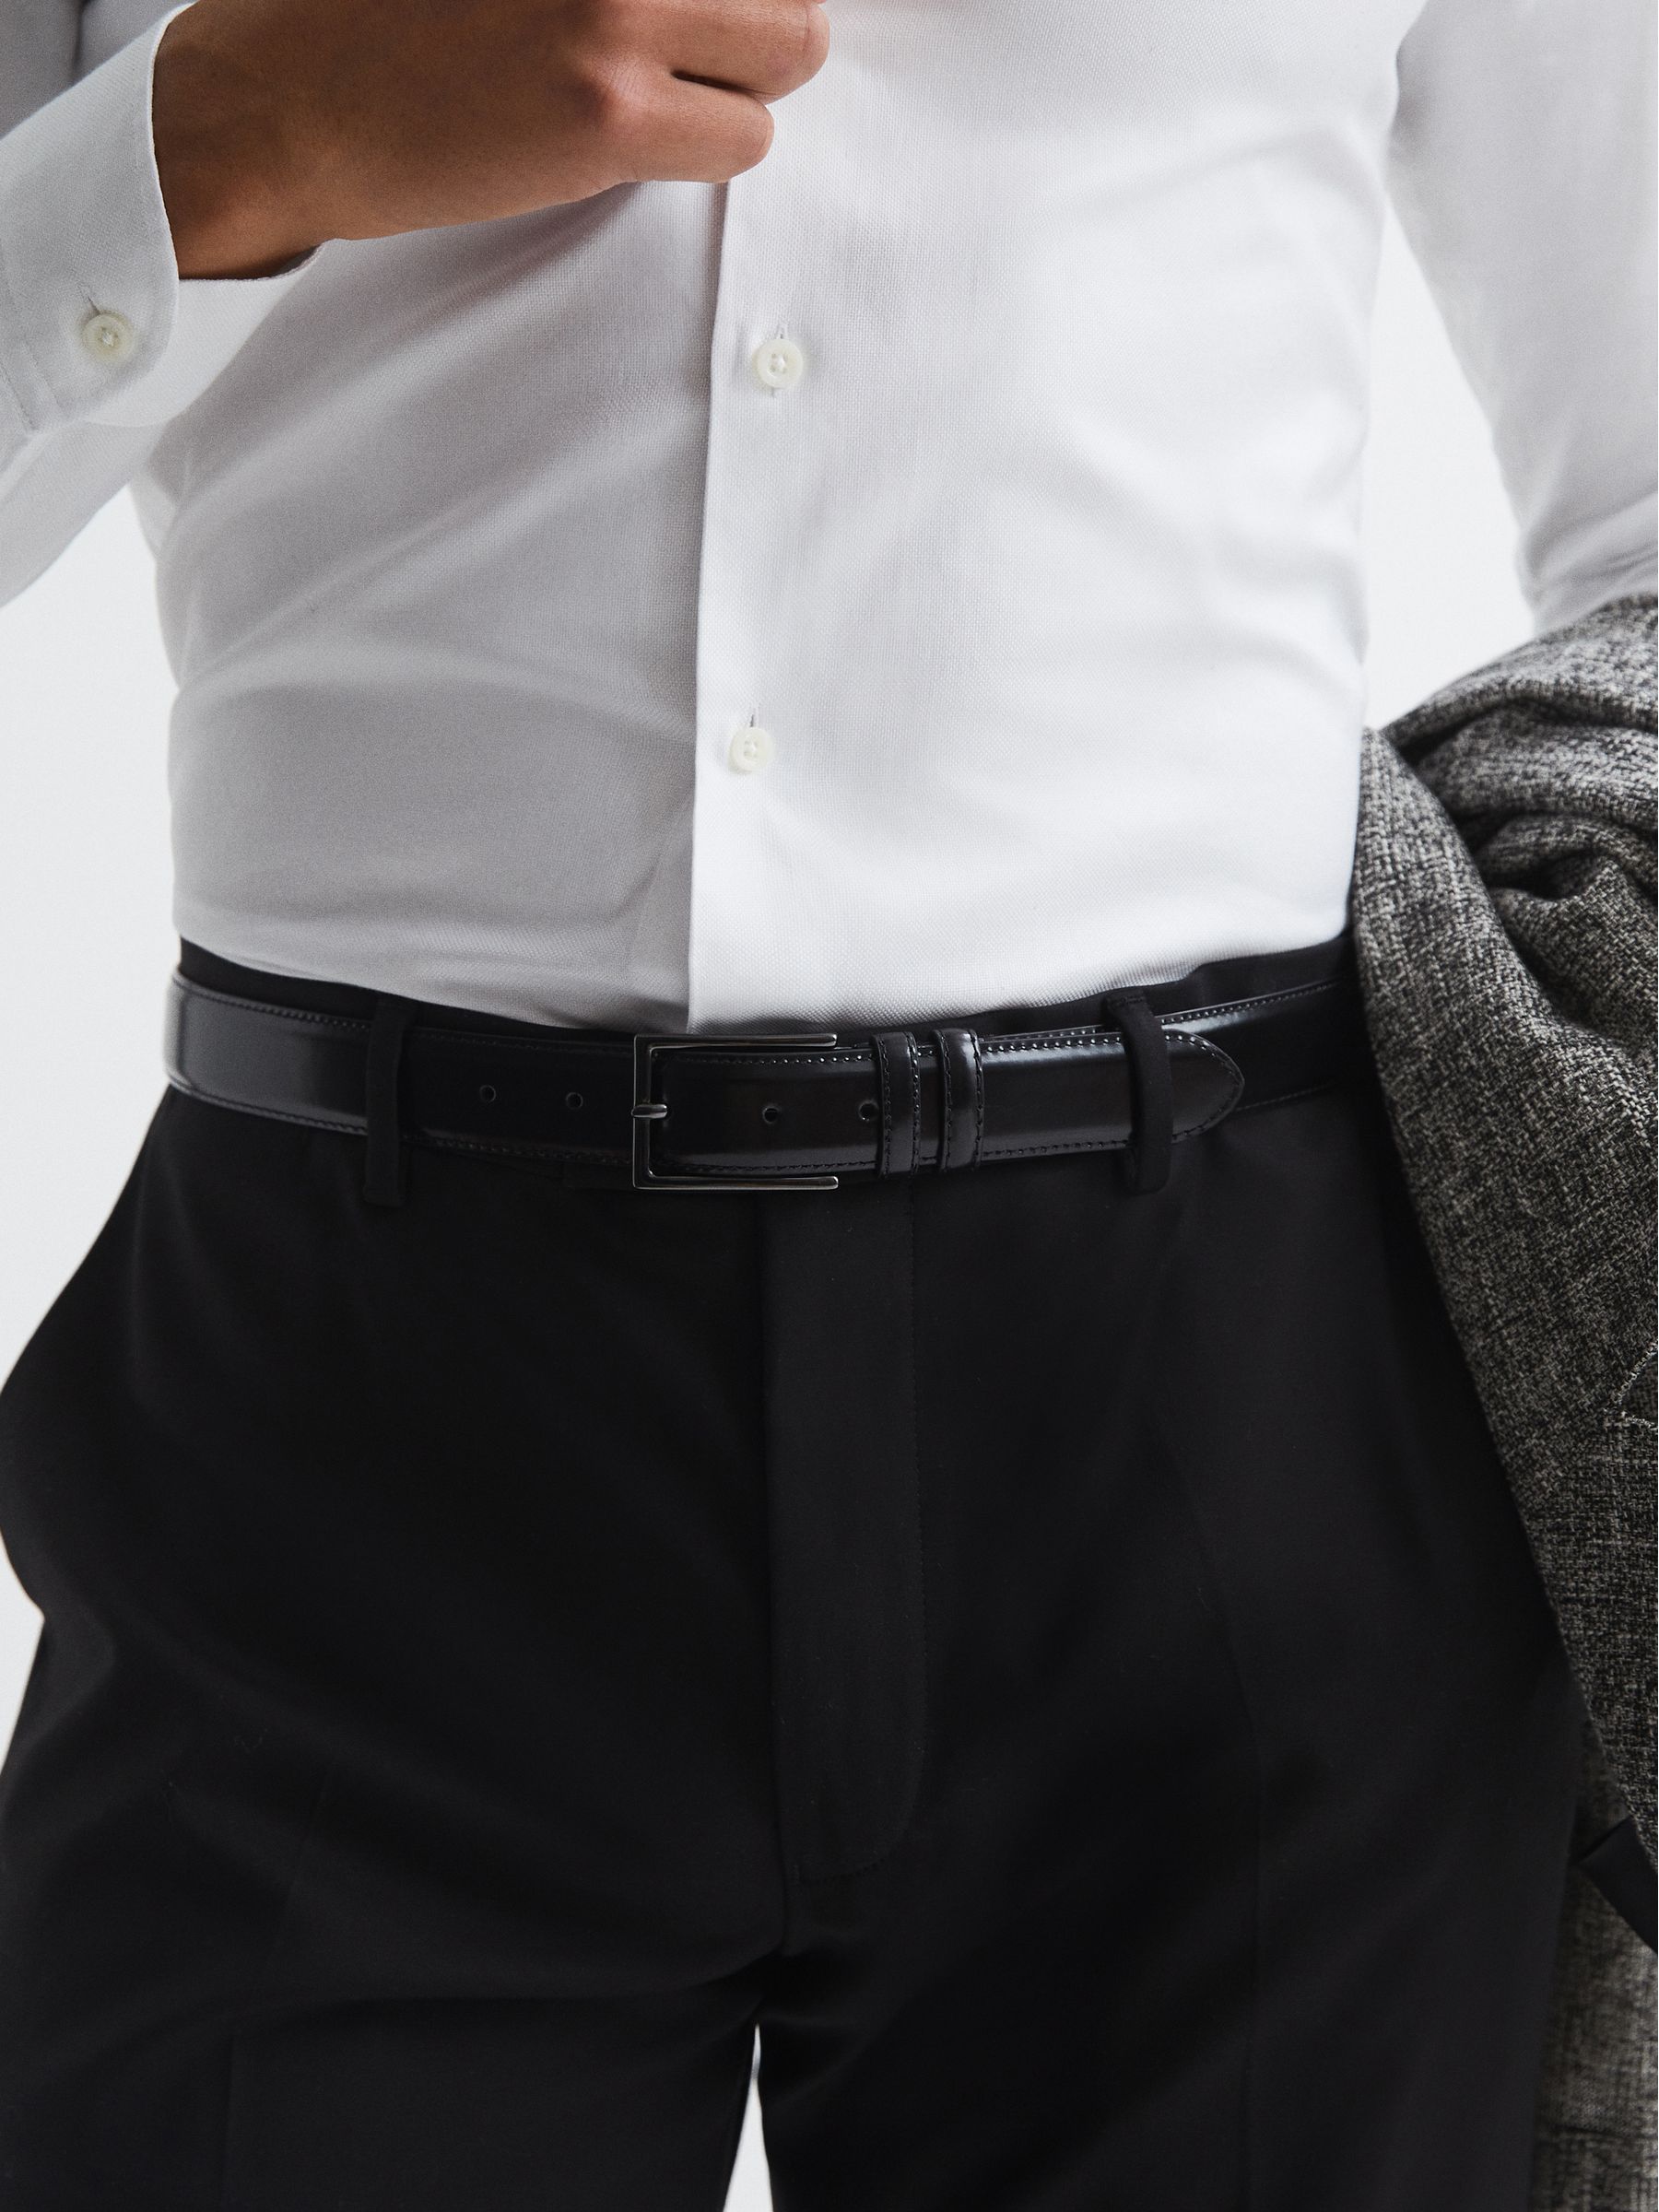 Reiss Martin Formal Suit Belt - REISS